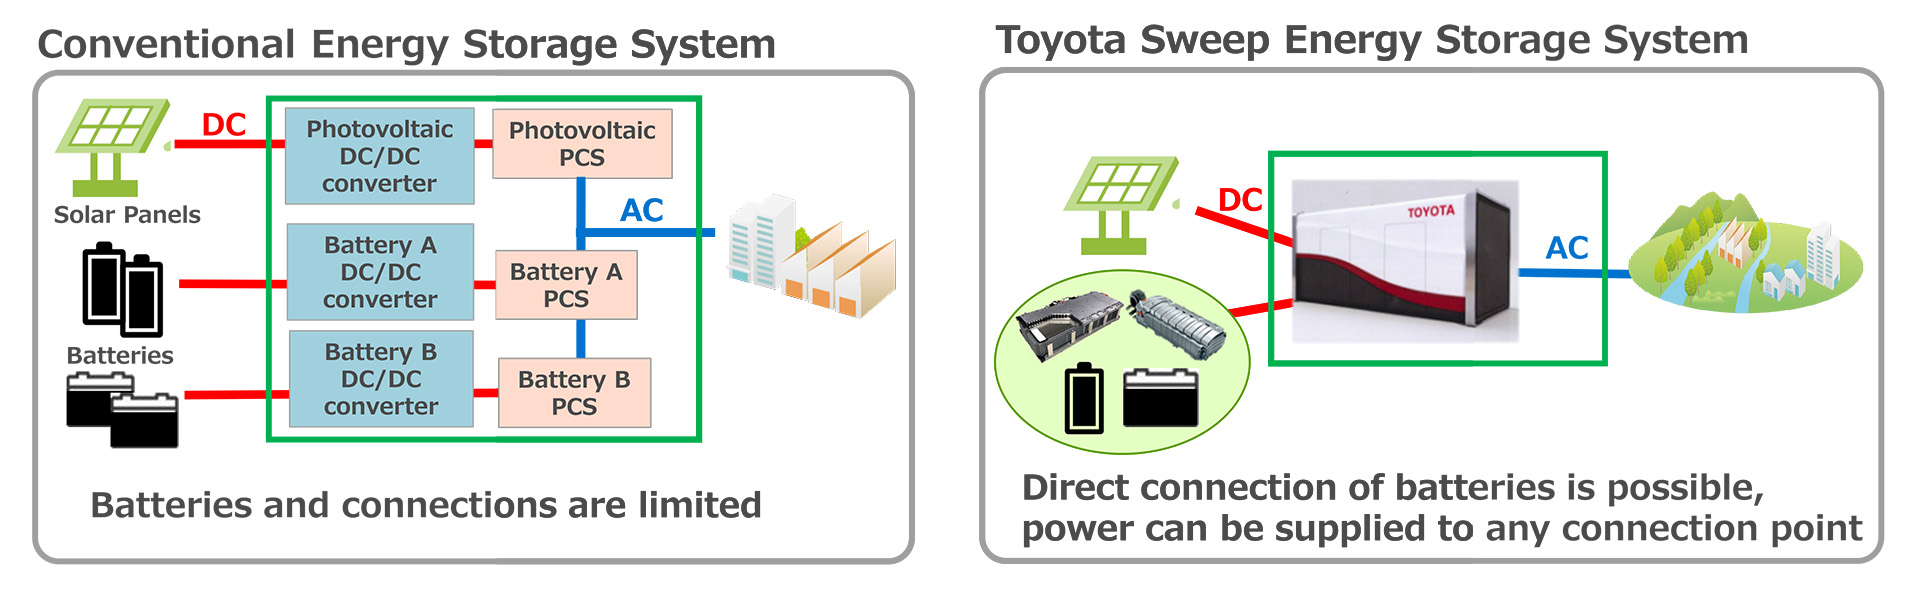 Toyota energiatároló rendszer leselejtezett villanyautó-akkukból